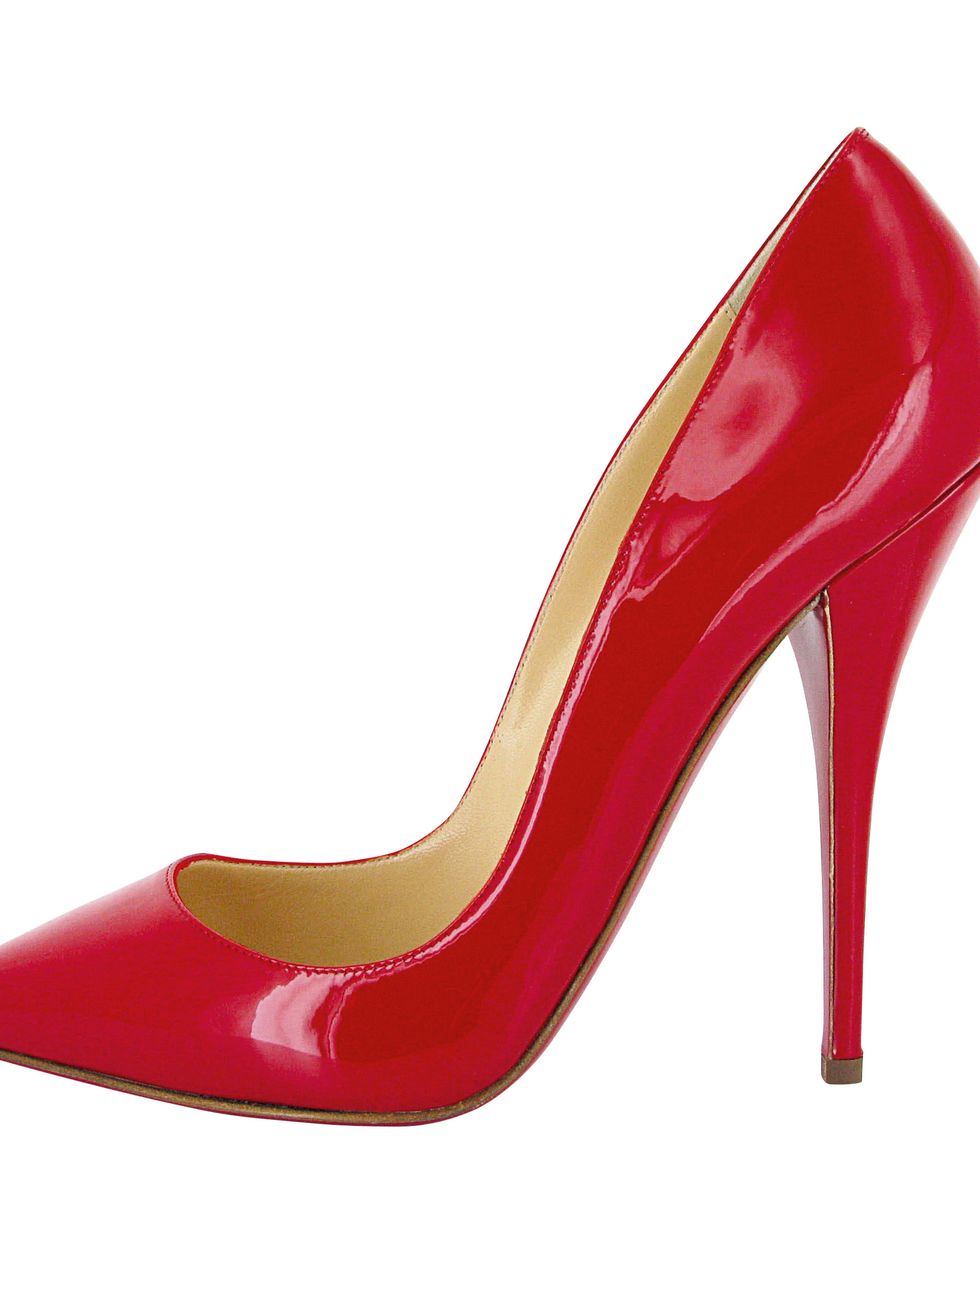 Footwear, High heels, Brown, Red, Basic pump, Tan, Carmine, Maroon, Beige, Court shoe, 